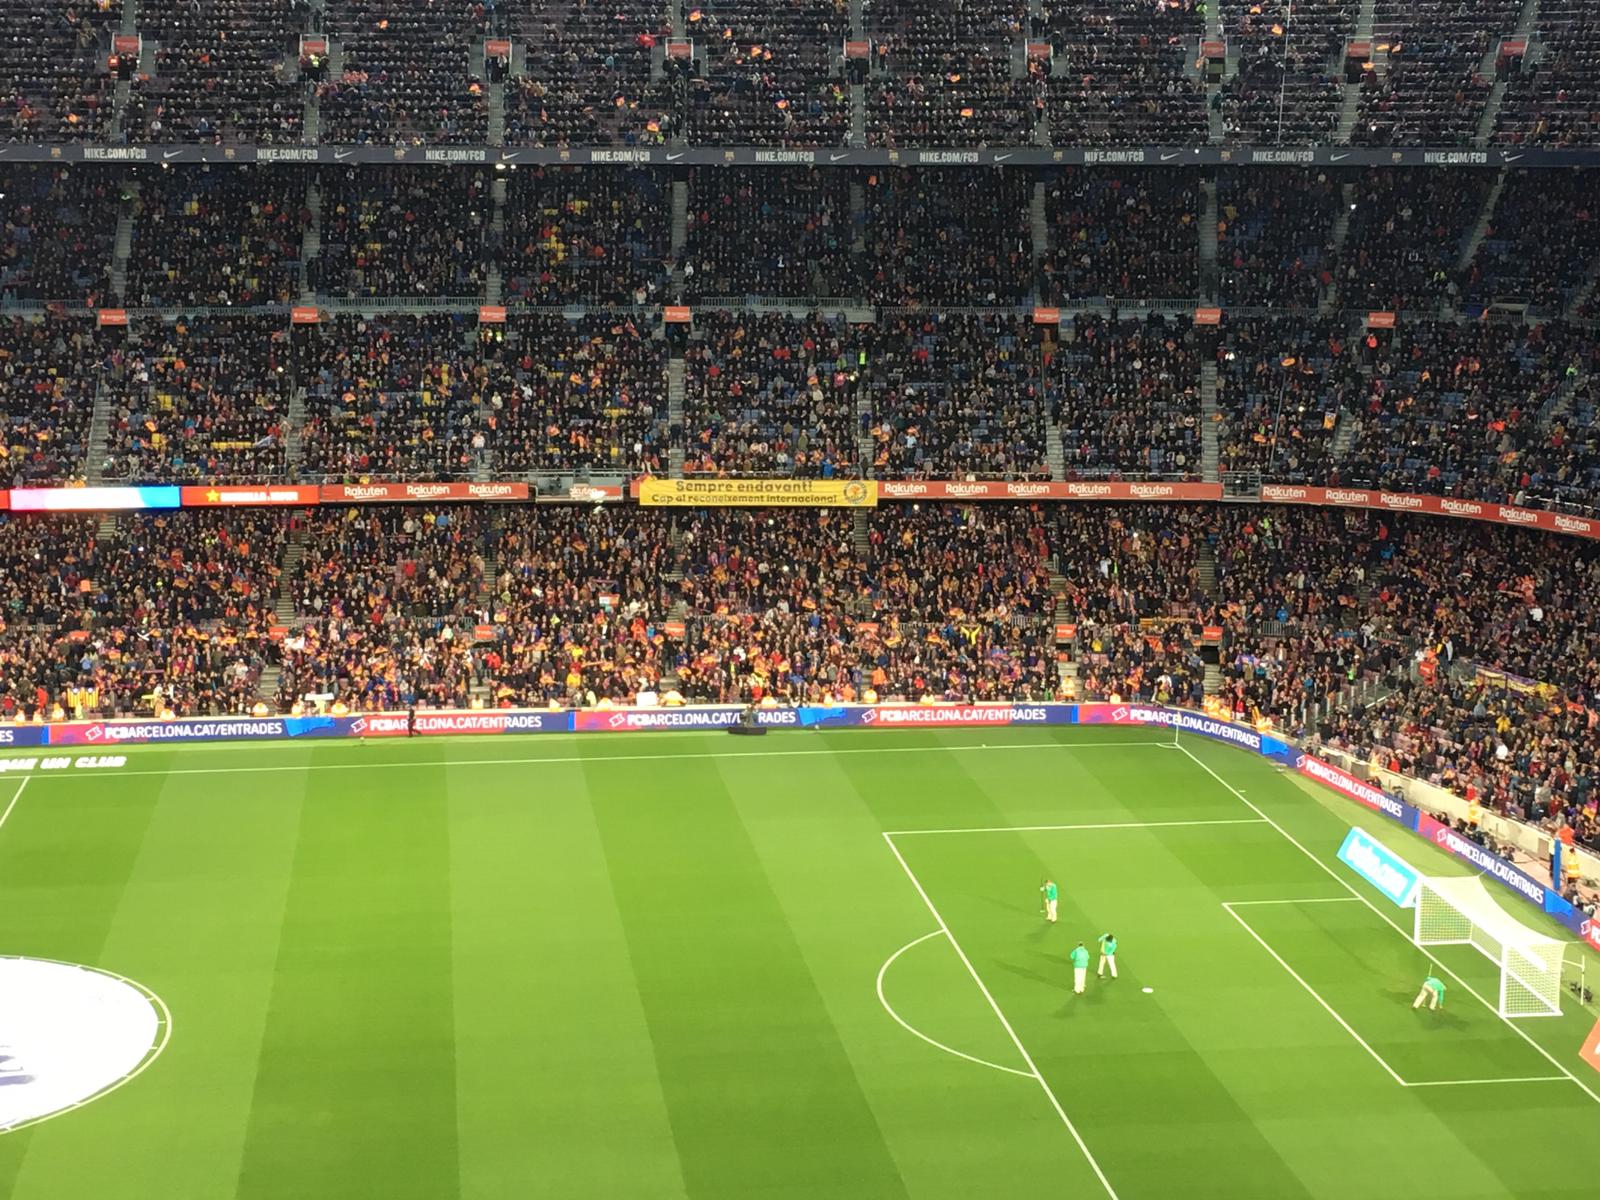 "Cap al reconeixement internacional": el Camp Nou pensa en Catalunya